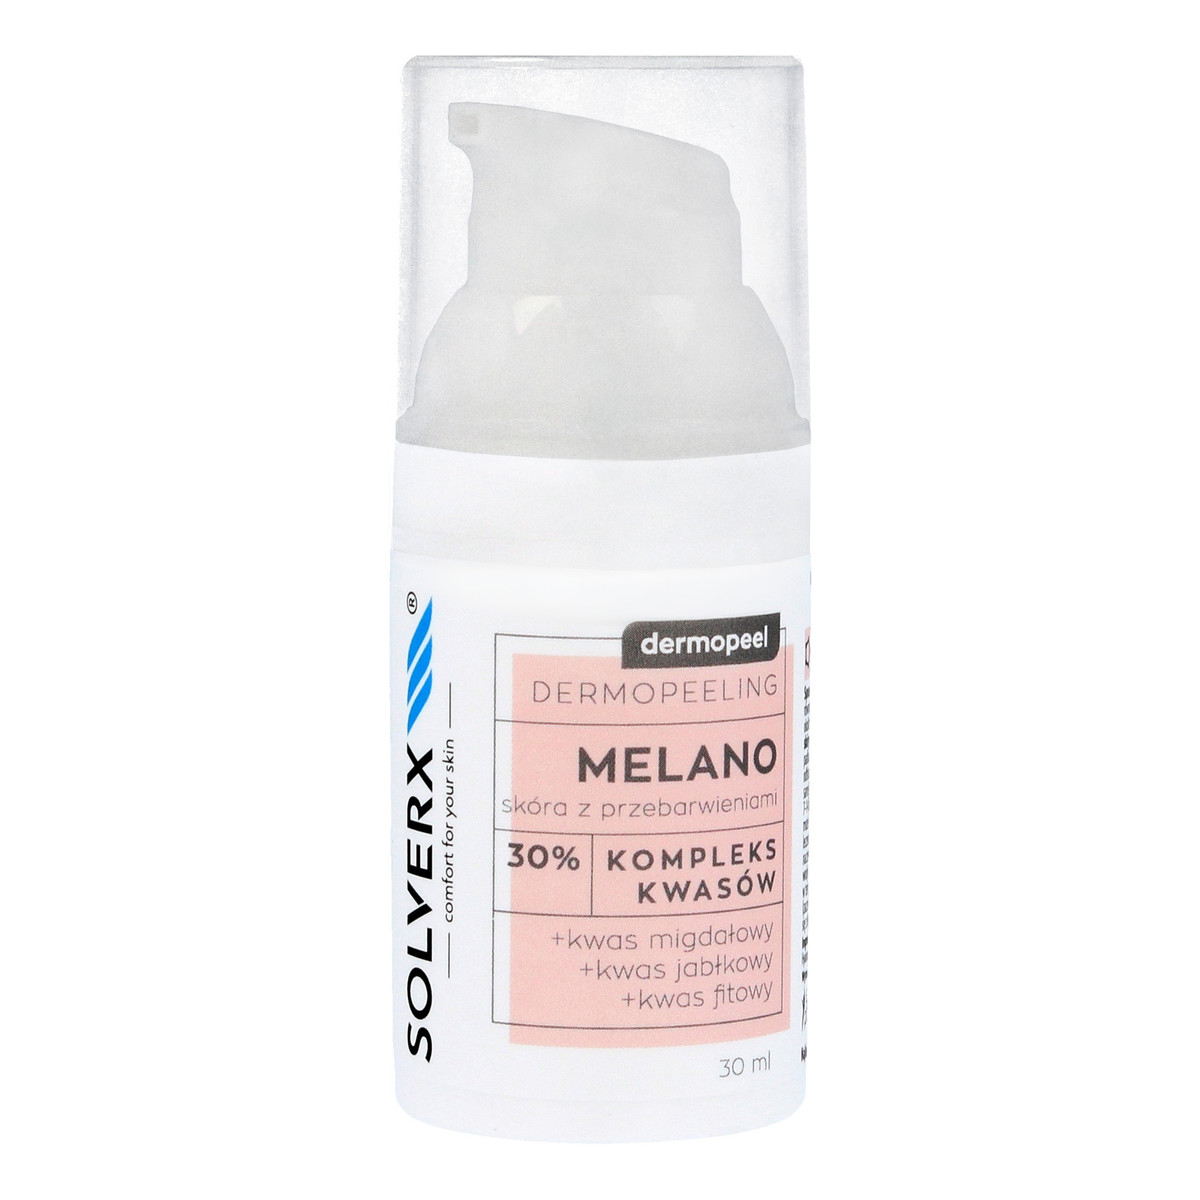 Solverx Dermopeel Dermopeeling Melano - Kompleks Kwasów 30% (migdałowy, jabłkowy, fitowy) 30ml